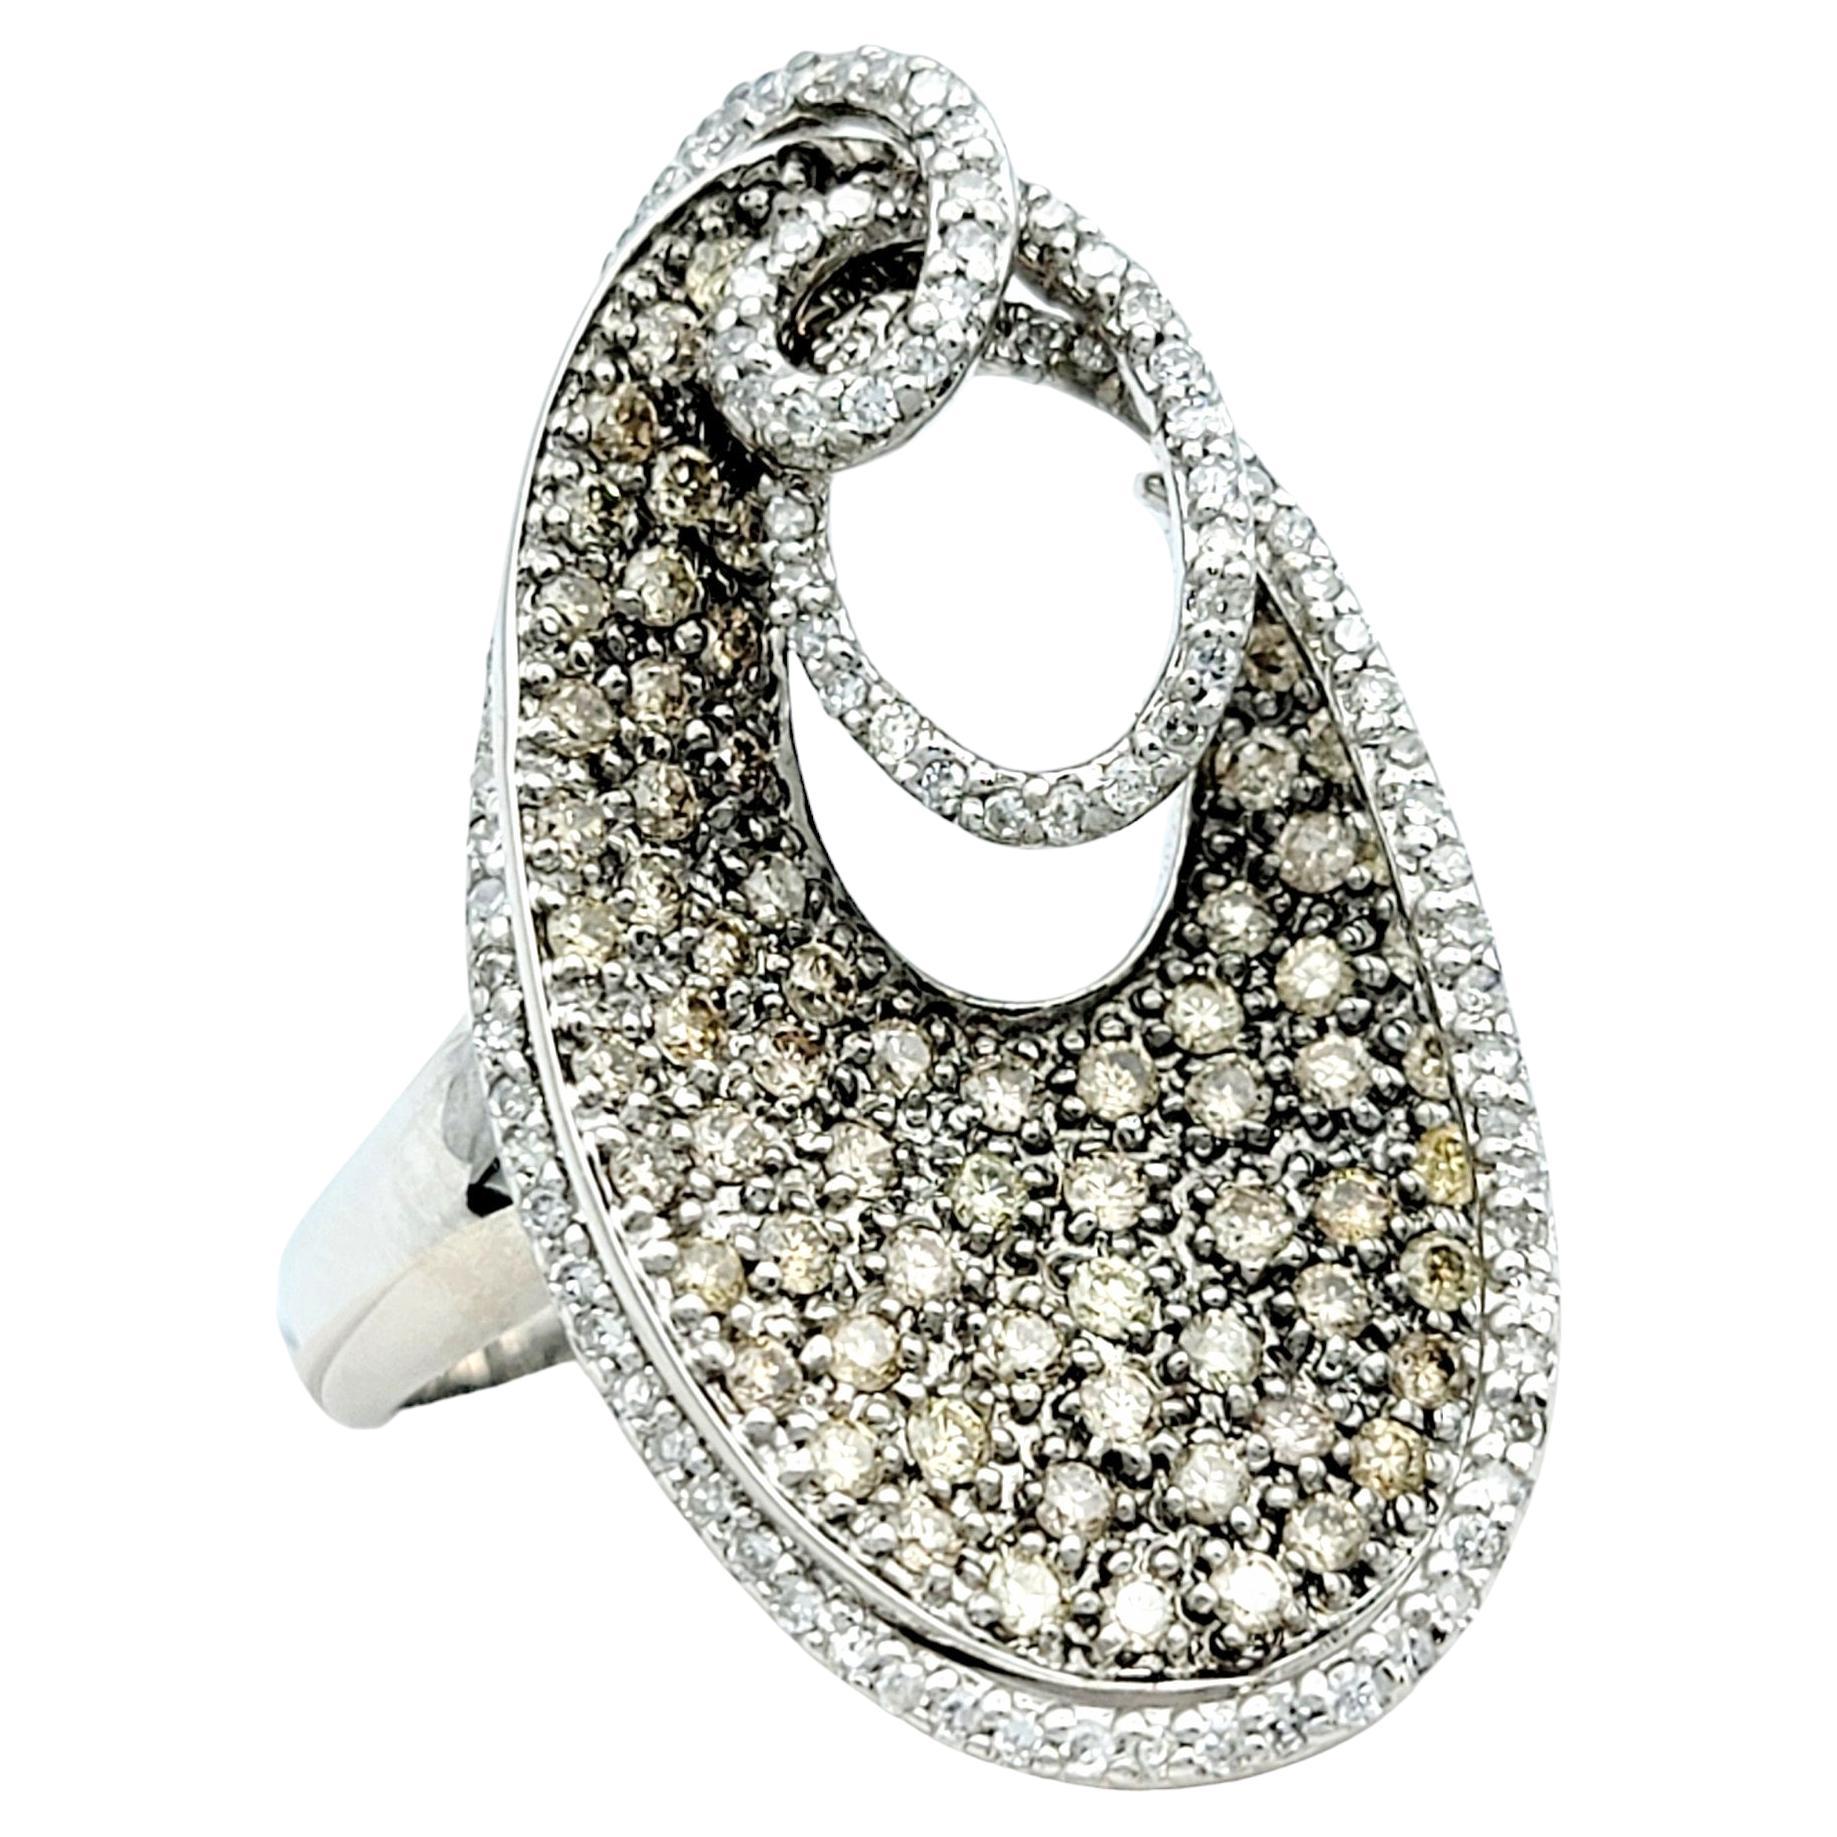 Ring Größe: 7.5

Dieser Diamantring mit Pflasterung strahlt zeitgenössische Eleganz aus und besticht durch sein Design in leuchtendem 14-karätigem Weißgold. Die asymmetrische, längliche Form verleiht dem Stück einen Hauch von modernem Flair und